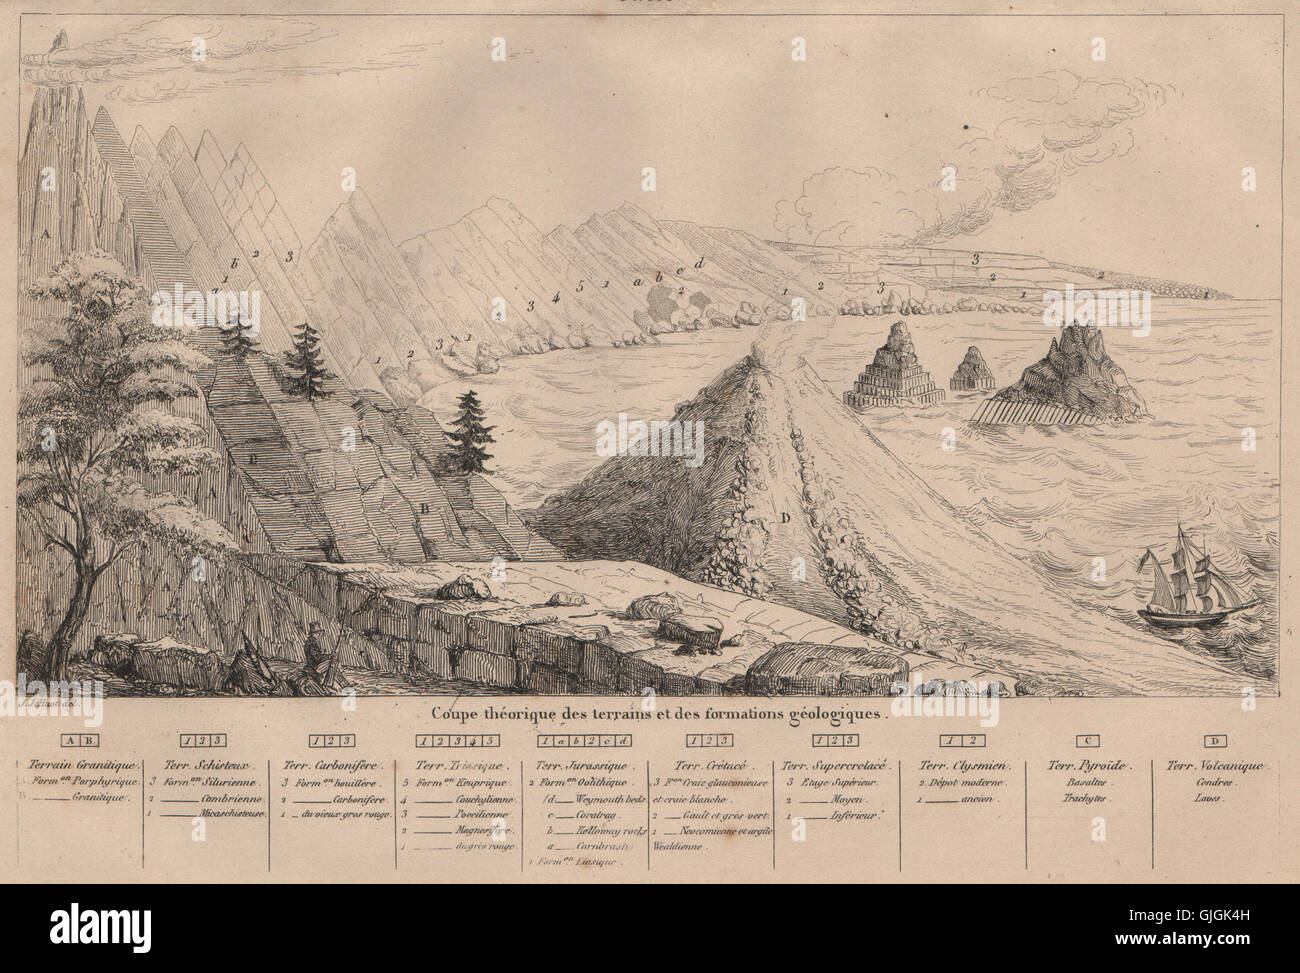 Geologia: sezione teorica di terra e formazioni geologiche, antica stampa 1834 Foto Stock